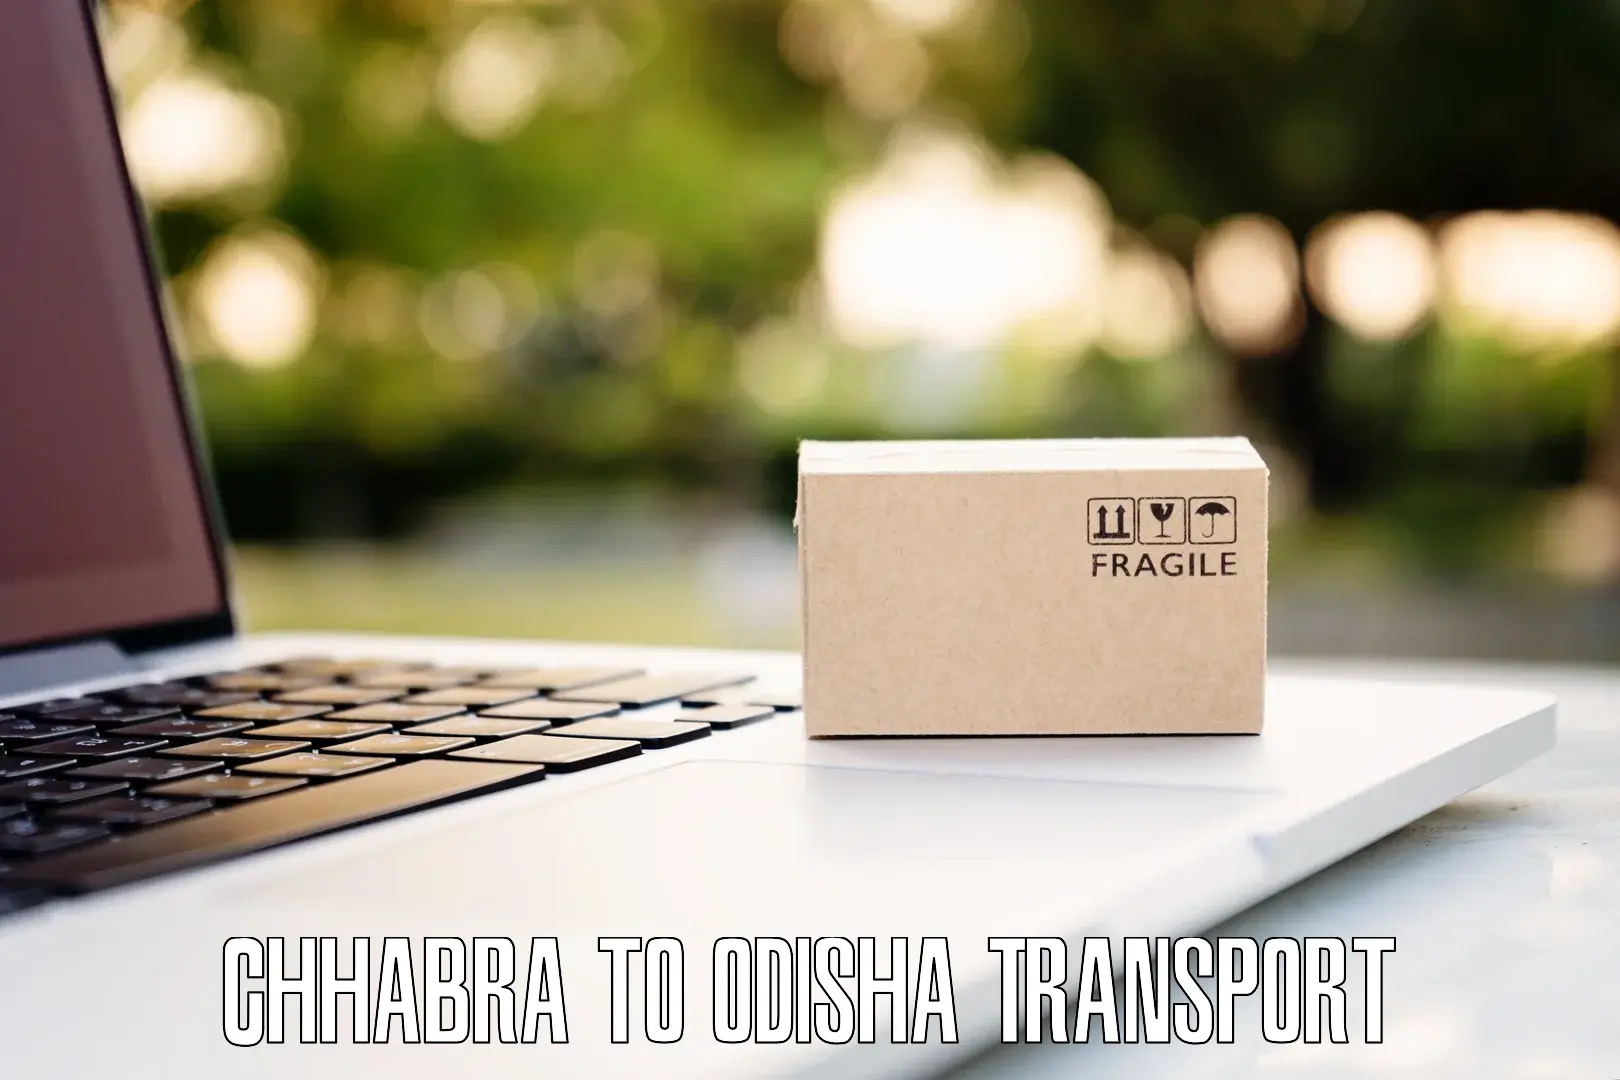 Daily transport service Chhabra to Baisinga